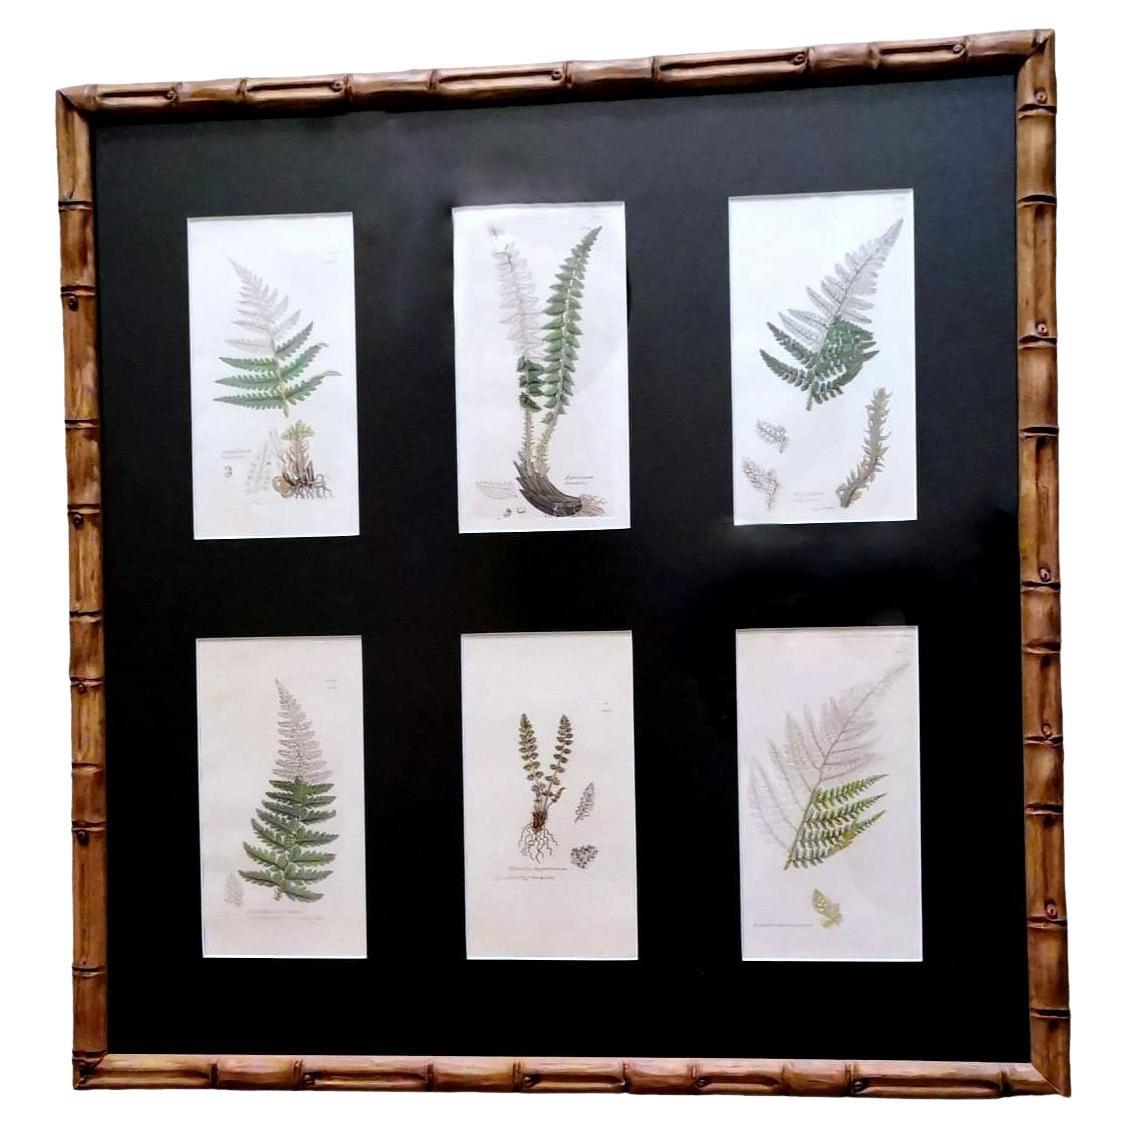 Rahmen „Faux Bamboo“ mit sechs englischen botanischen Drucken von James Sowerby